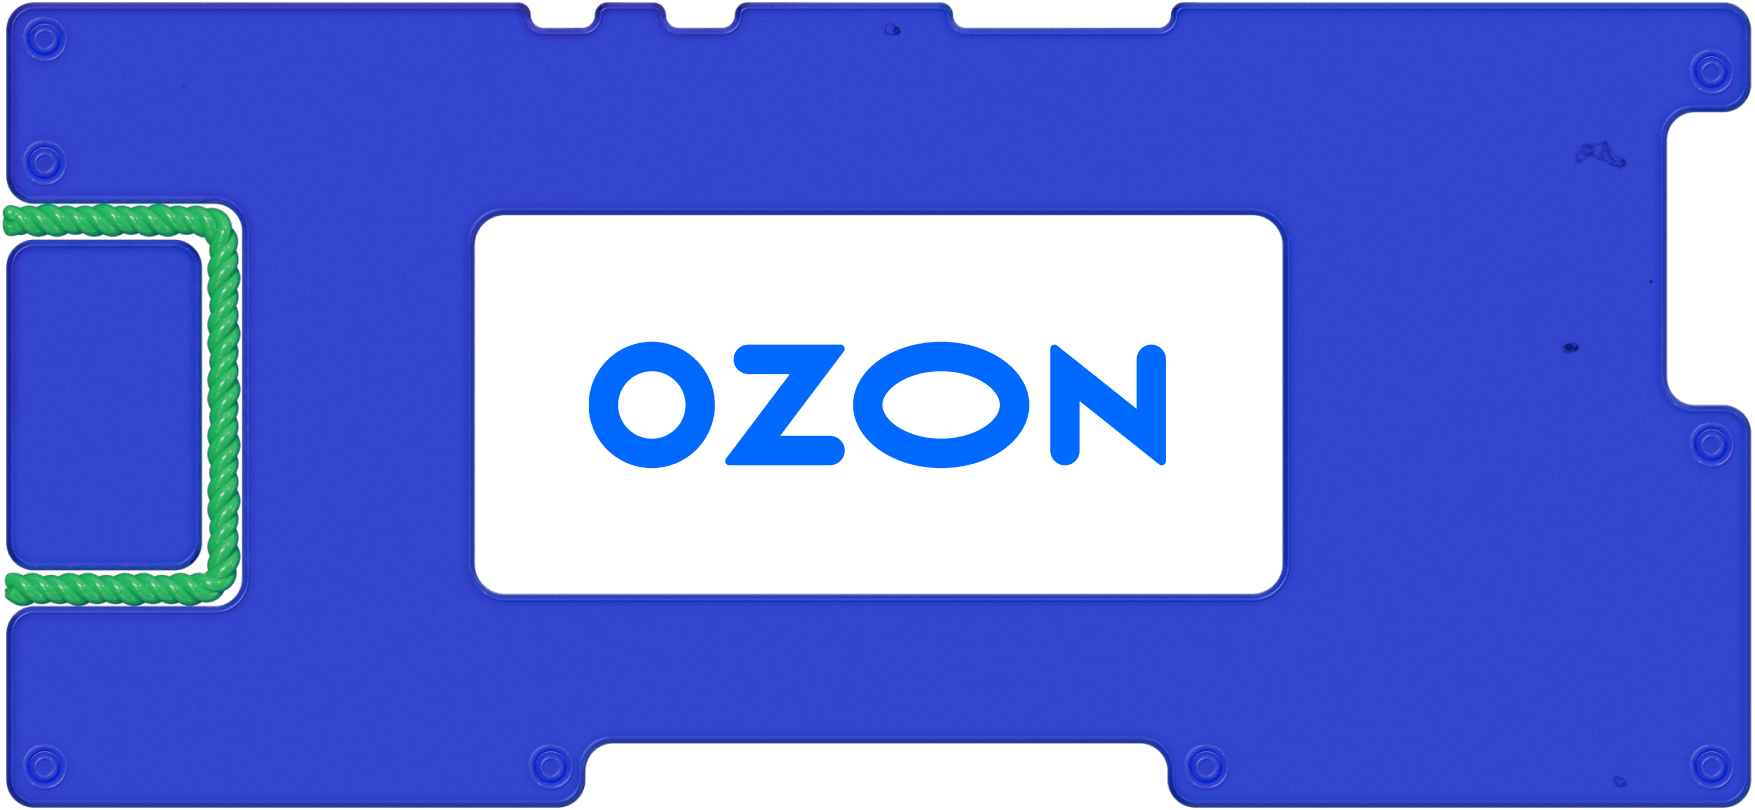 Отчет Ozon за 1 квартал: погасил долги и вышел из убытка